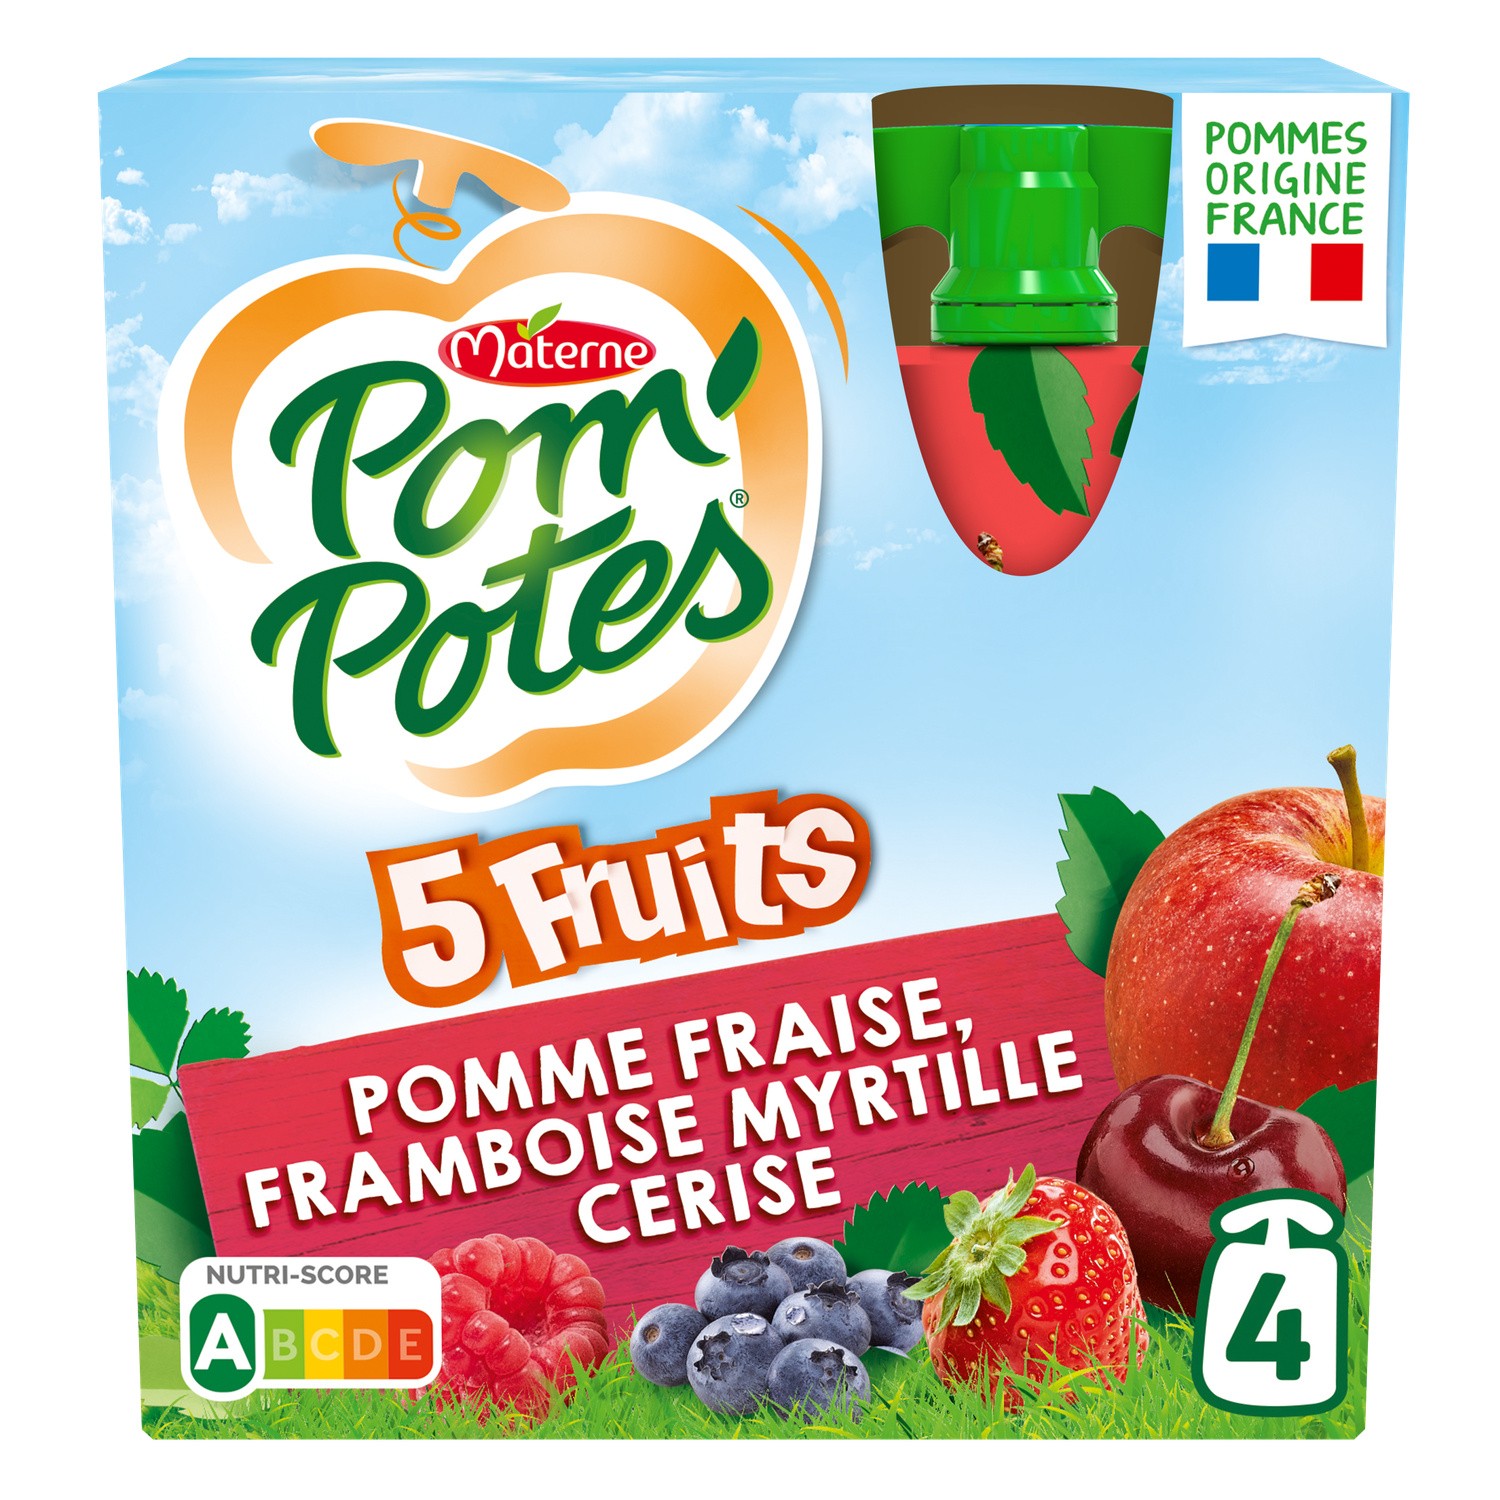 Pom'potes Materne - Pom'potes 5 fruits rouges 5 fruits jaunes sans sucres  ajoutés 12x90g - Supermarchés Match